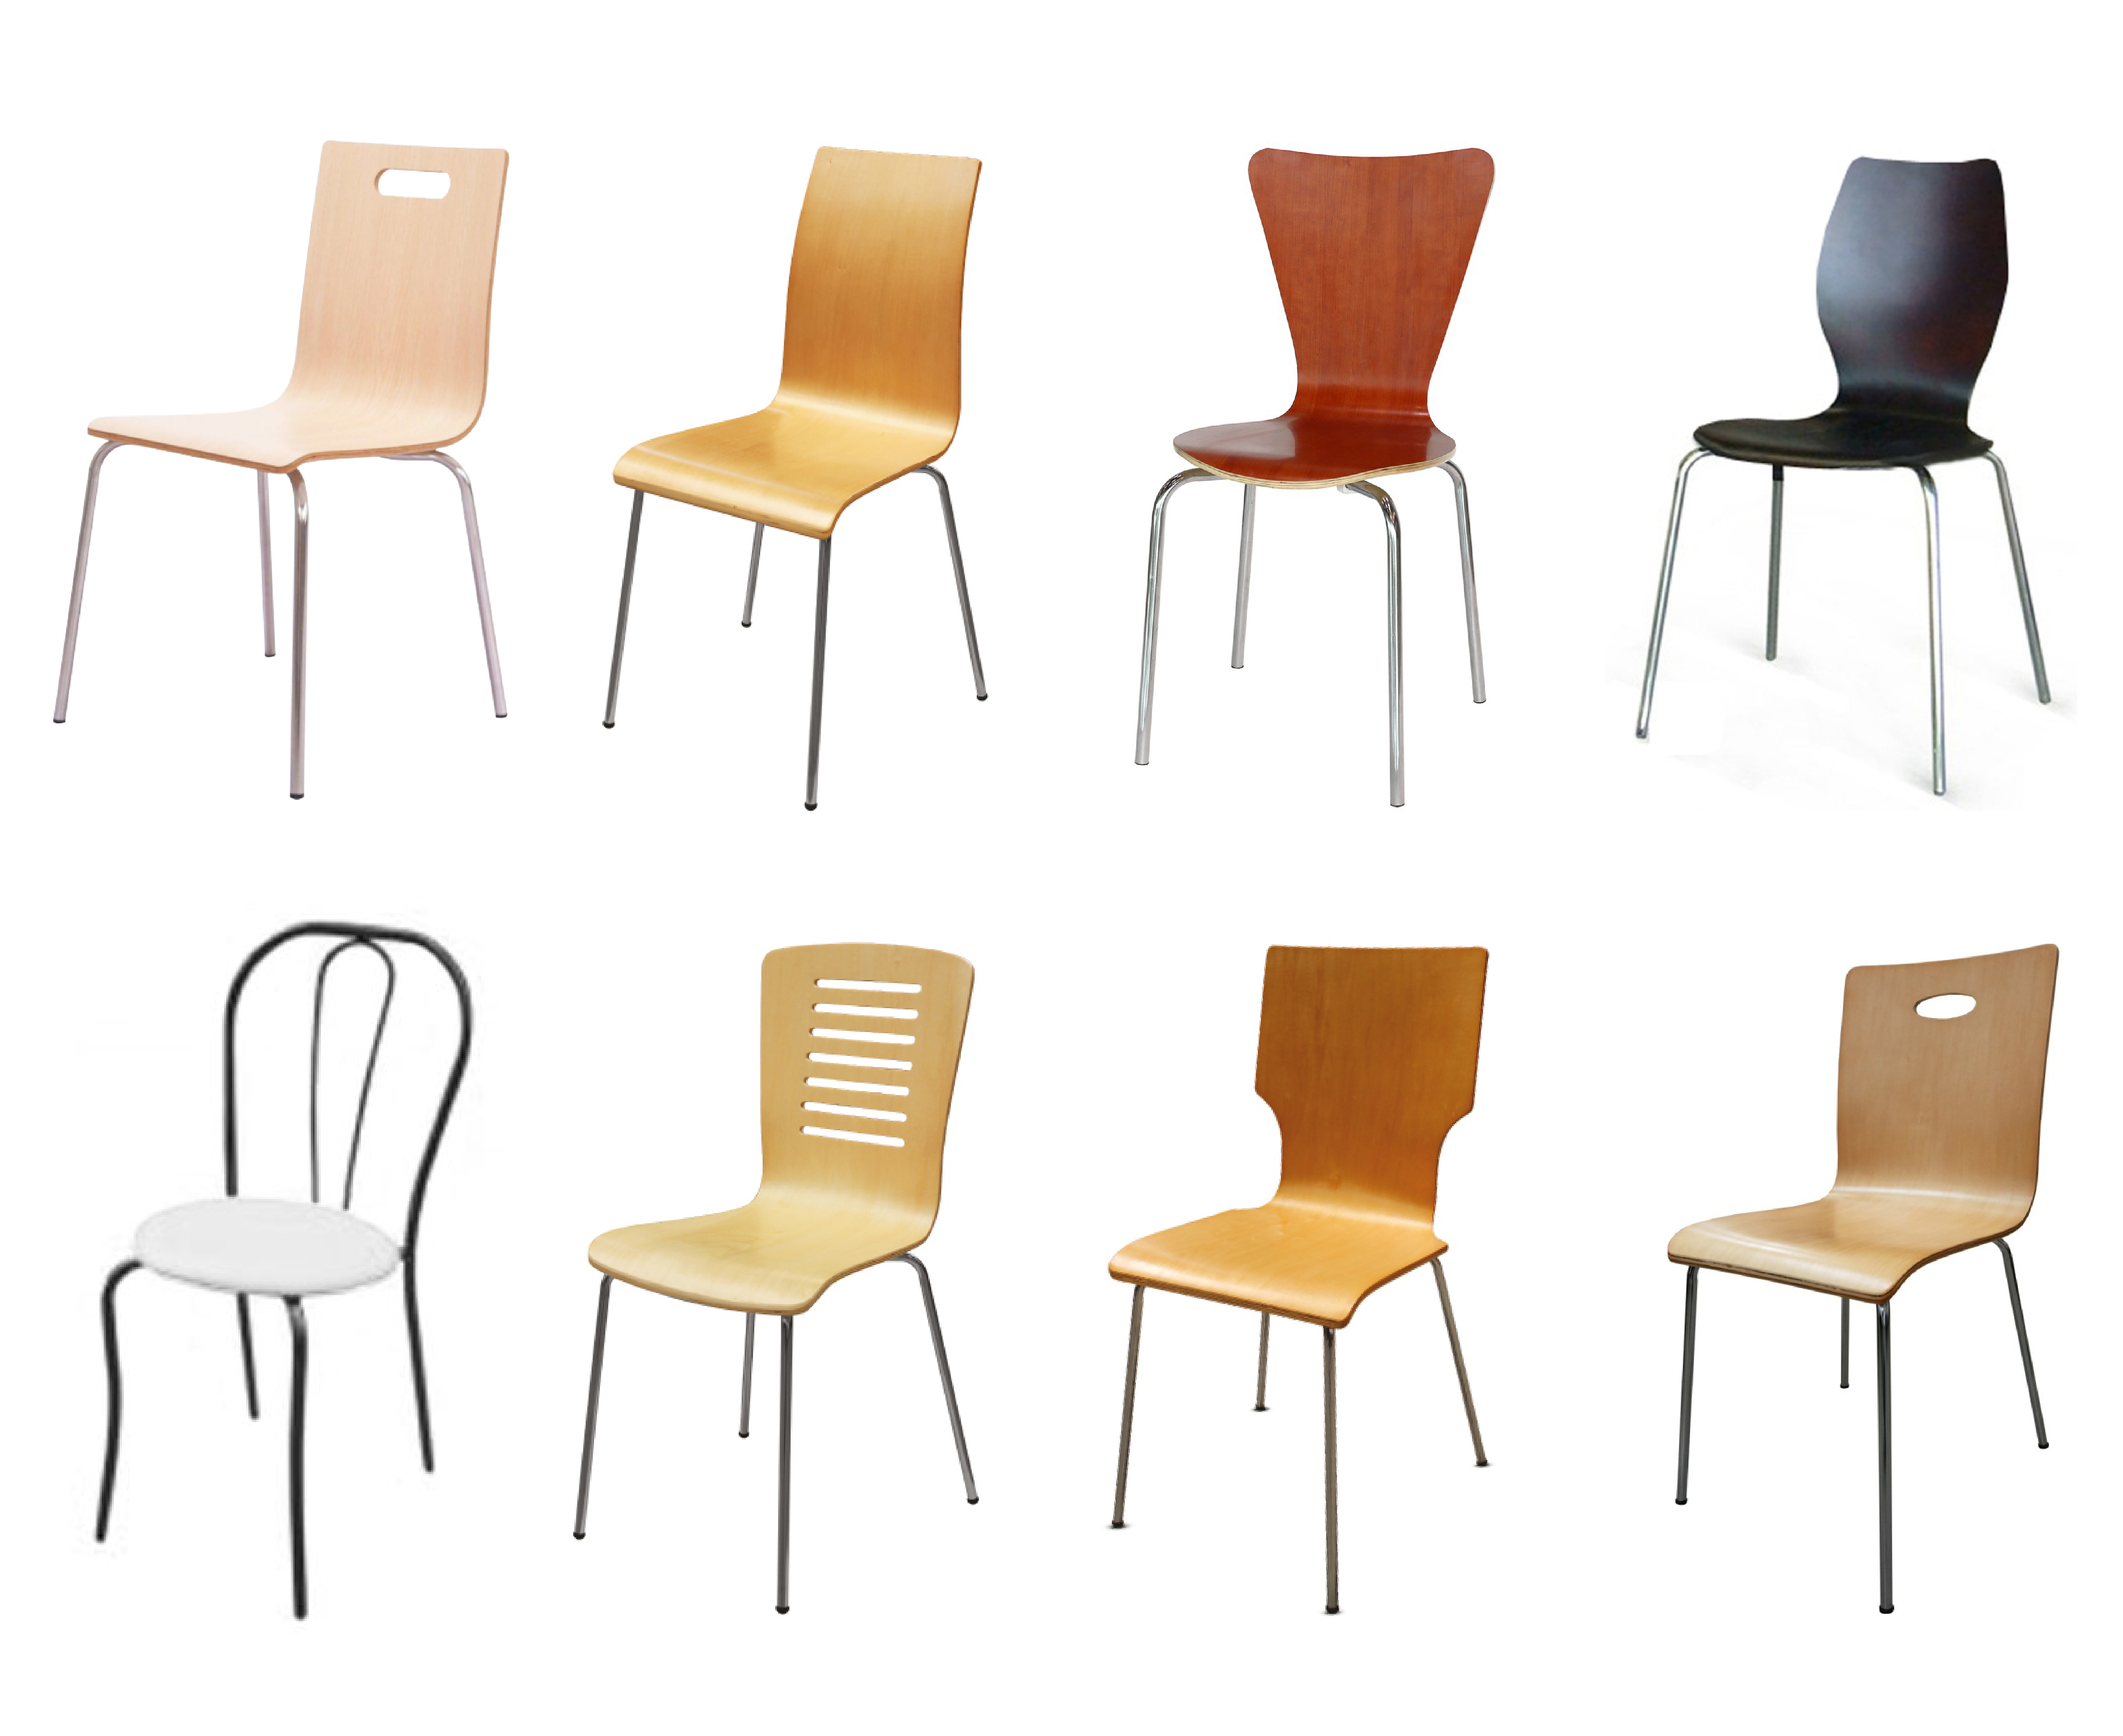 เก้าอี้ไม้อัดโค้ง เก้าอี้ศูนย์อาหาร Bent Plywood Chair Food Court Chairs